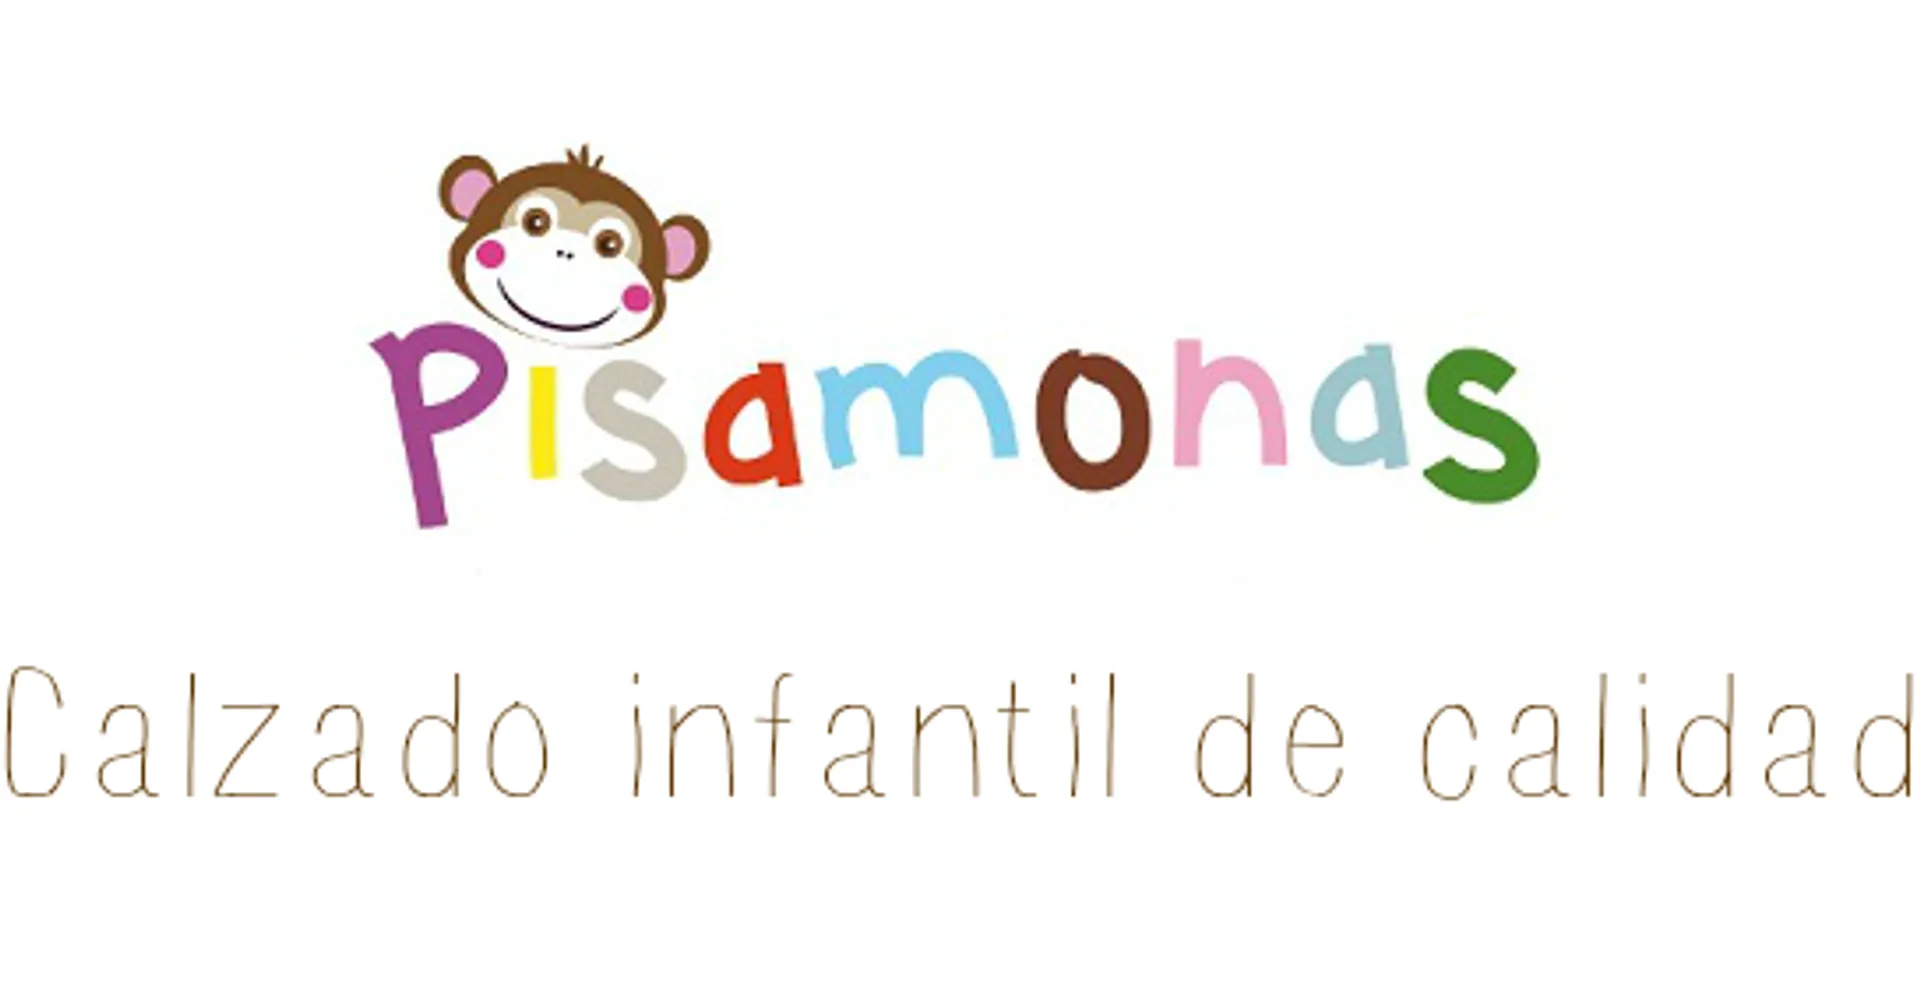 PISAMONAS logo de catálogo